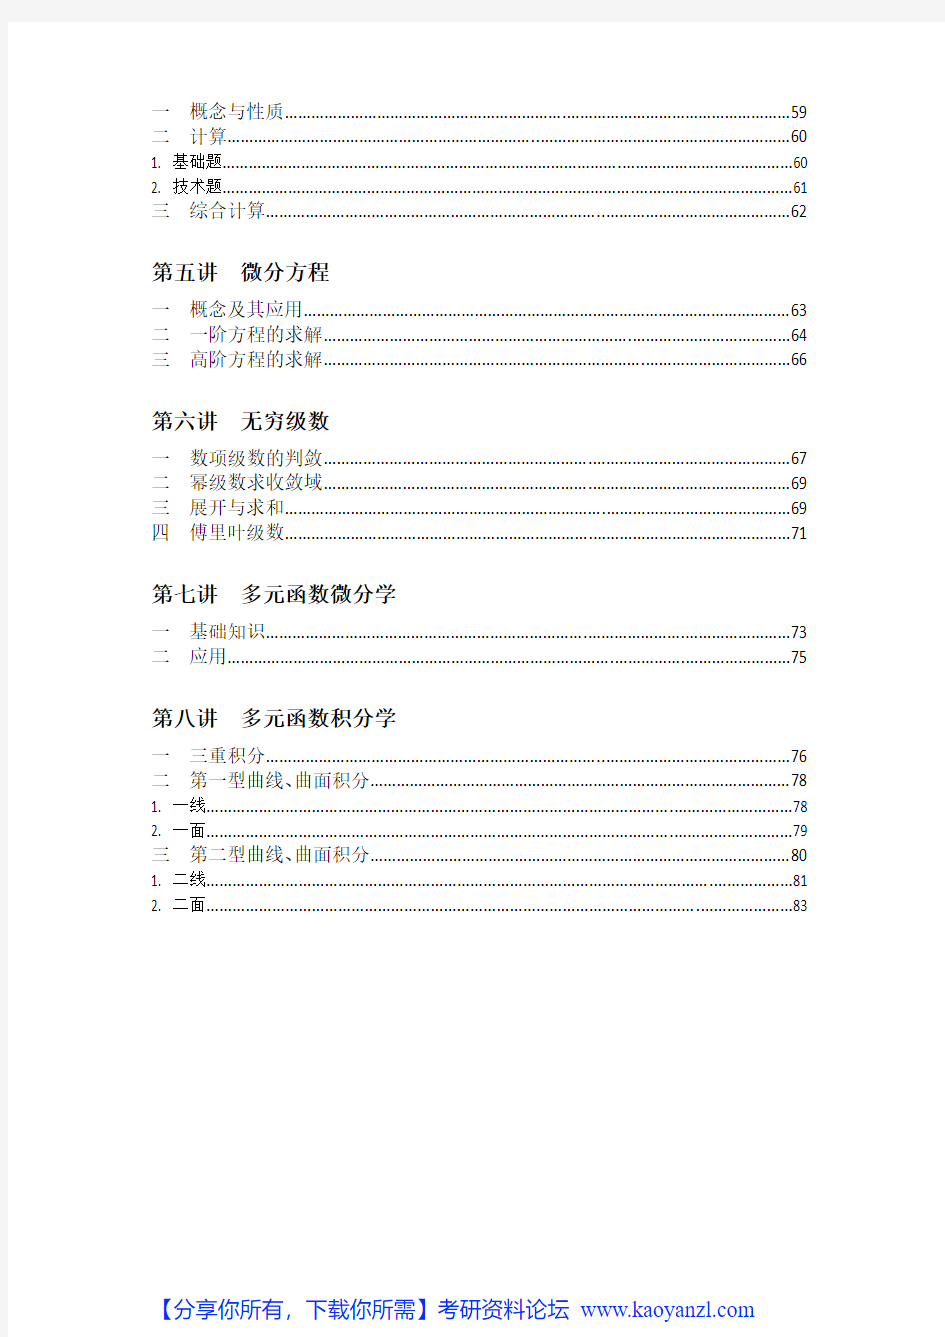 高等数学(张宇)_-_笔记_PDF